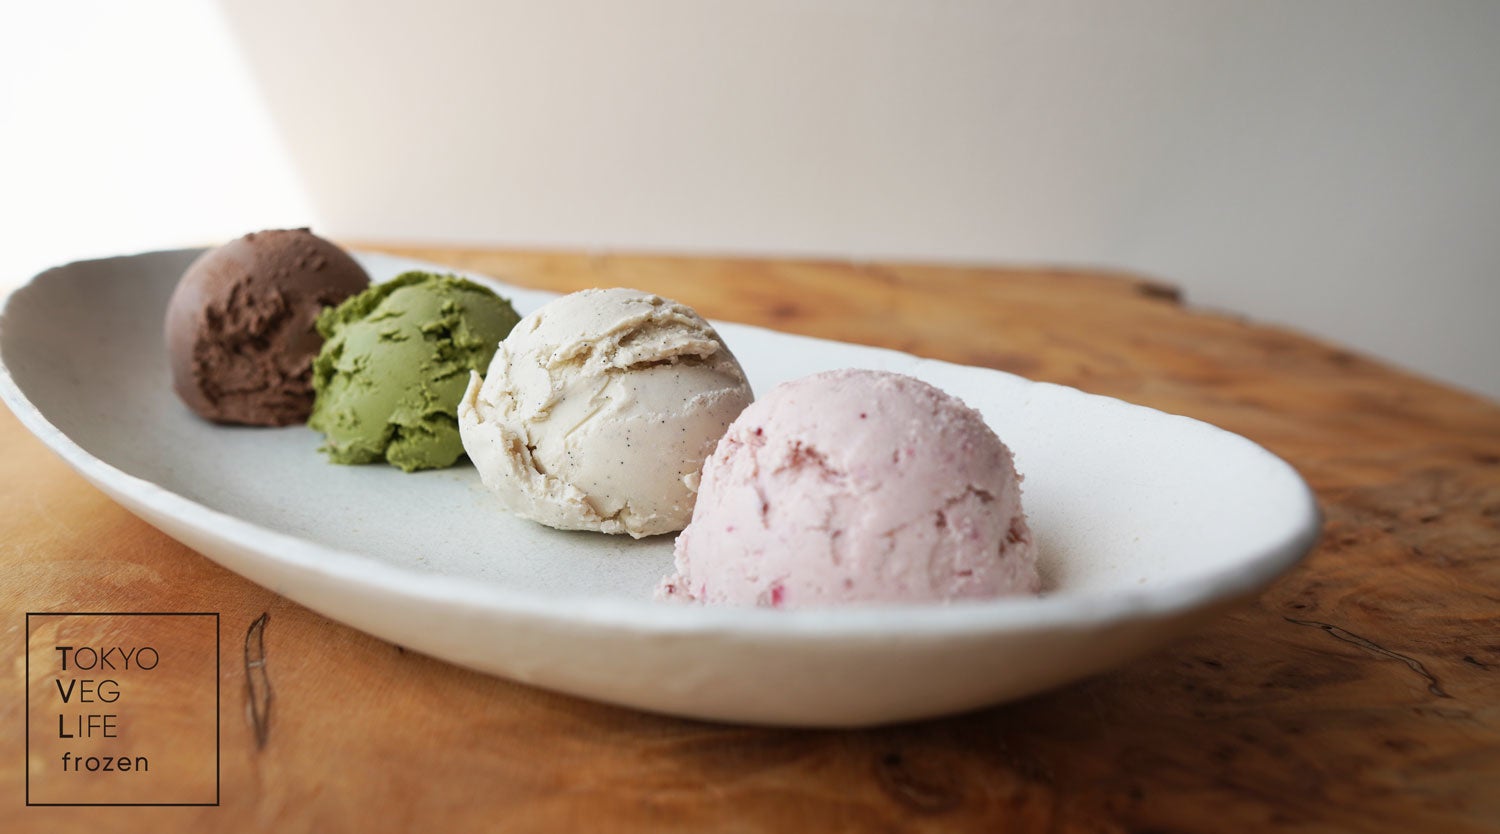 サステナブル・ヴィーガンフローズンフードブランド「TOKYO VEG LIFE frozen」がオープン。有機カシューナッツベースのアイスクリームや自然発酵フローズンヨーグルトを展開。のサブ画像1